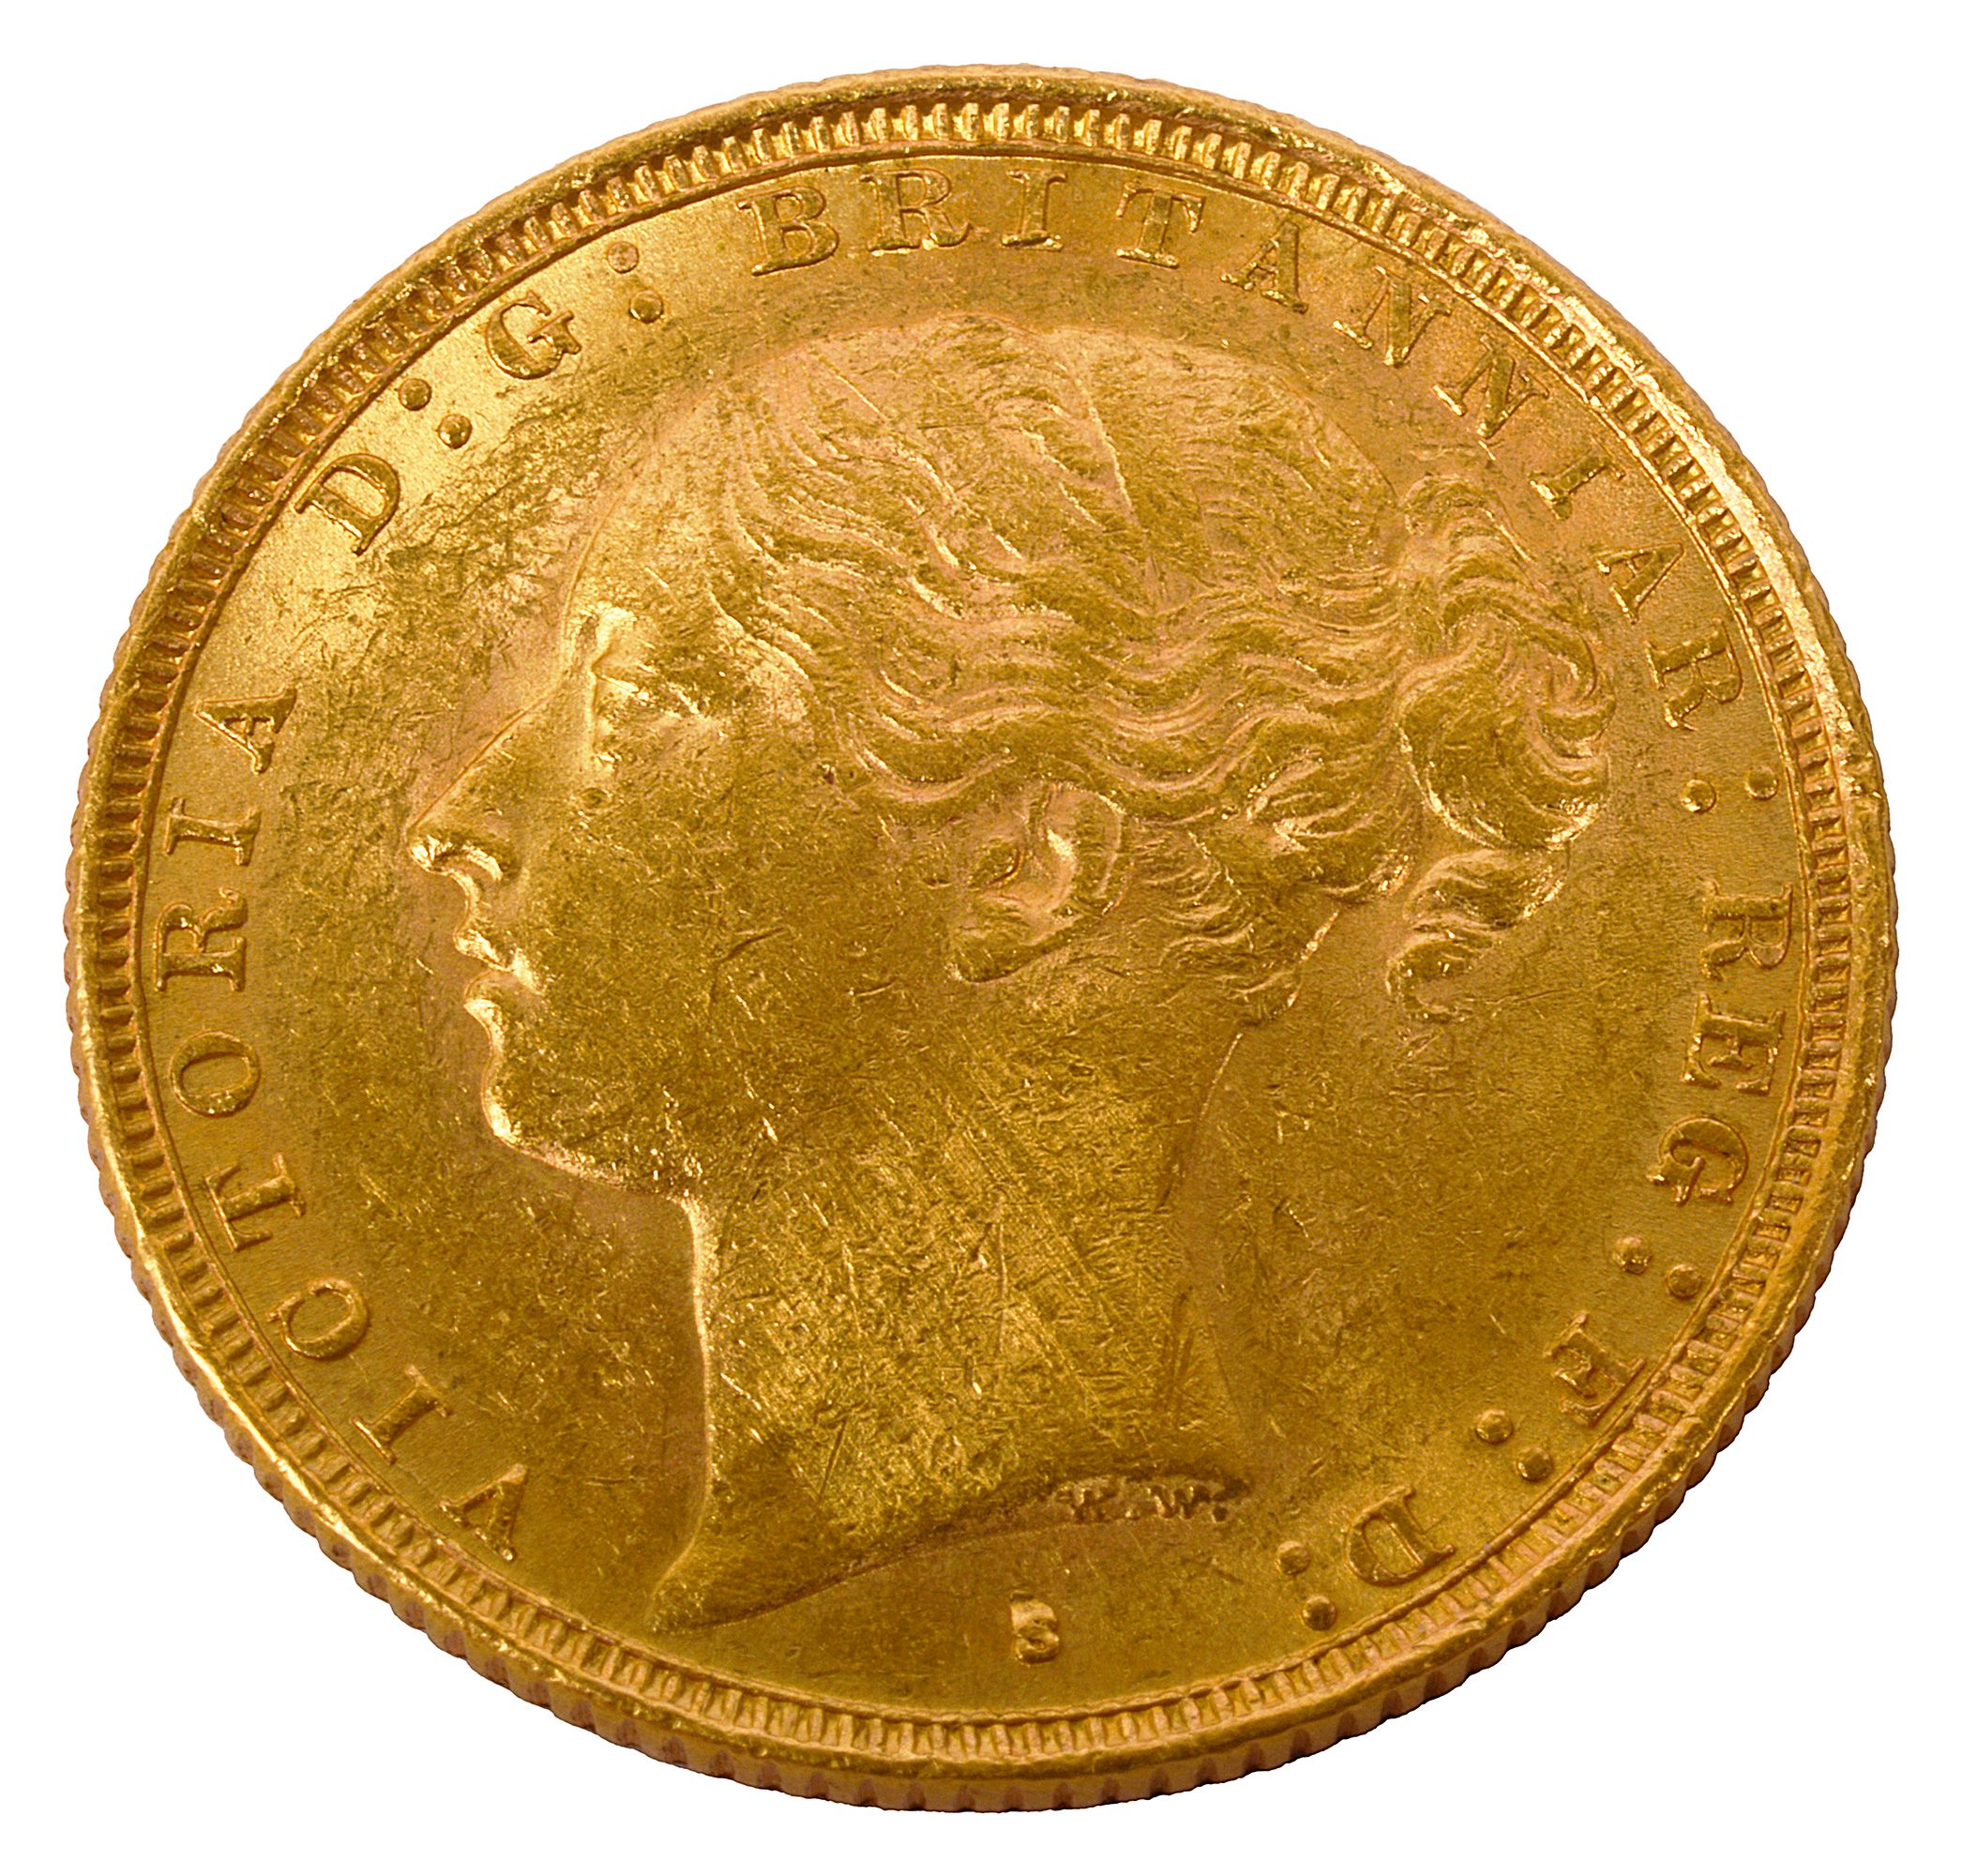 Australia Victoria gold full sovereign, 1886